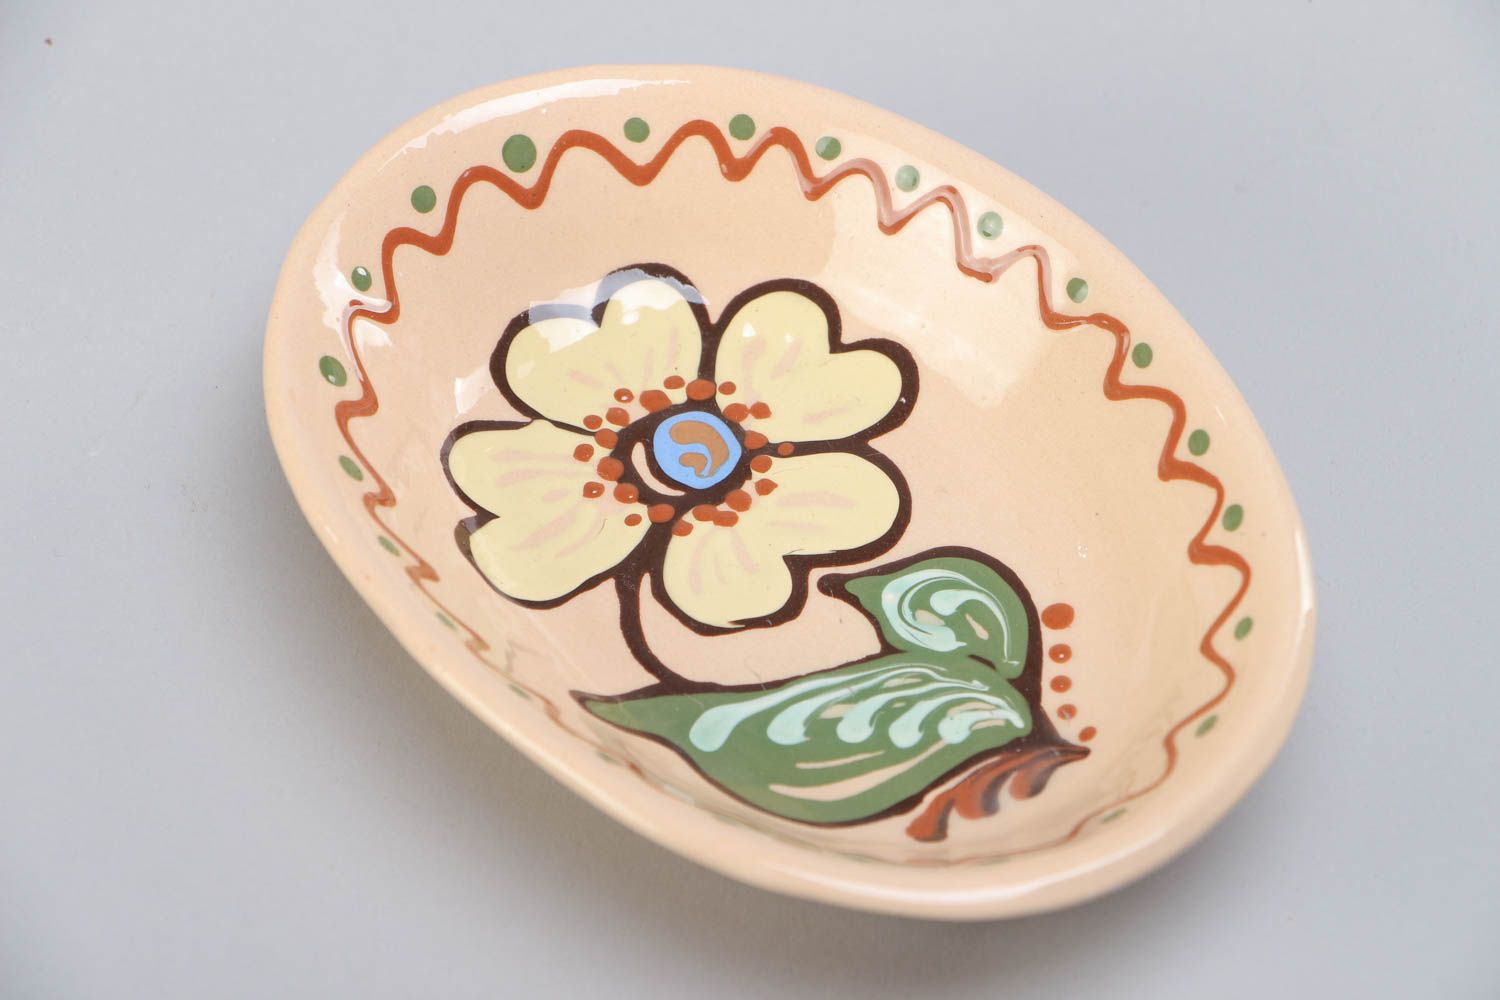 Assiette creuse ovale en terre cuite avec fleur peinte originale faite main photo 3